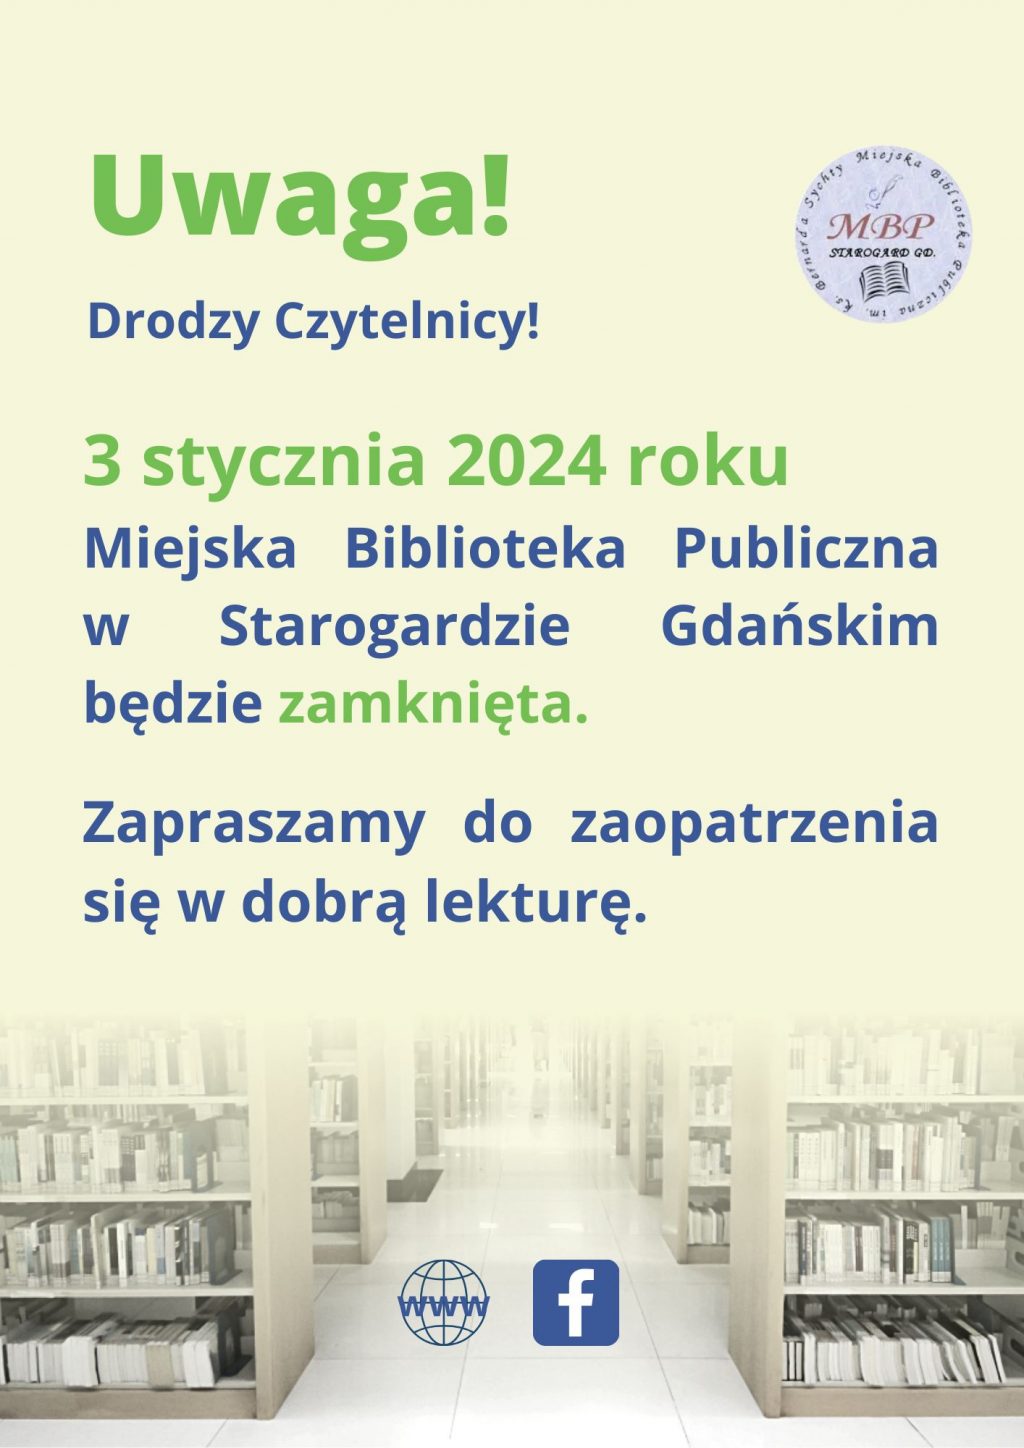 Plakat informuje, że 3 stycznia 2024 roku Miejska Biblioteka Publiczna w Starogardzie Gdańskim będzie zamknięta.